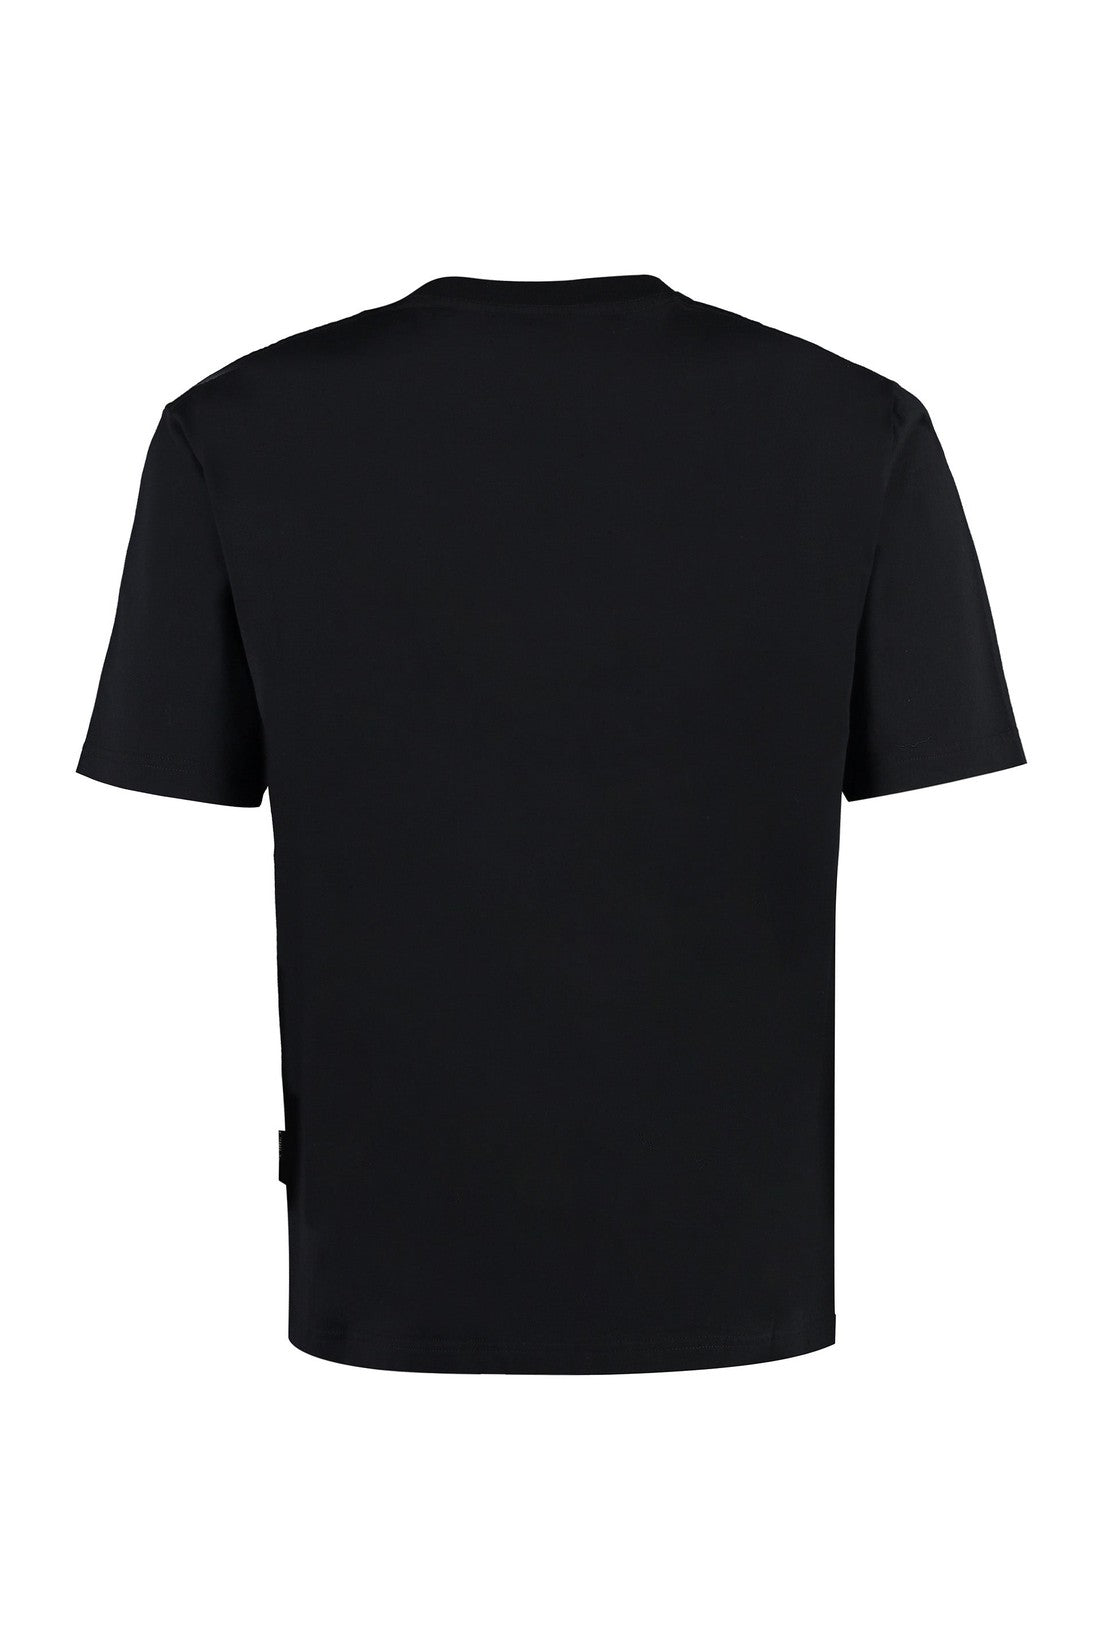 Palm Angels-OUTLET-SALE-Logo cotton t-shirt-ARCHIVIST